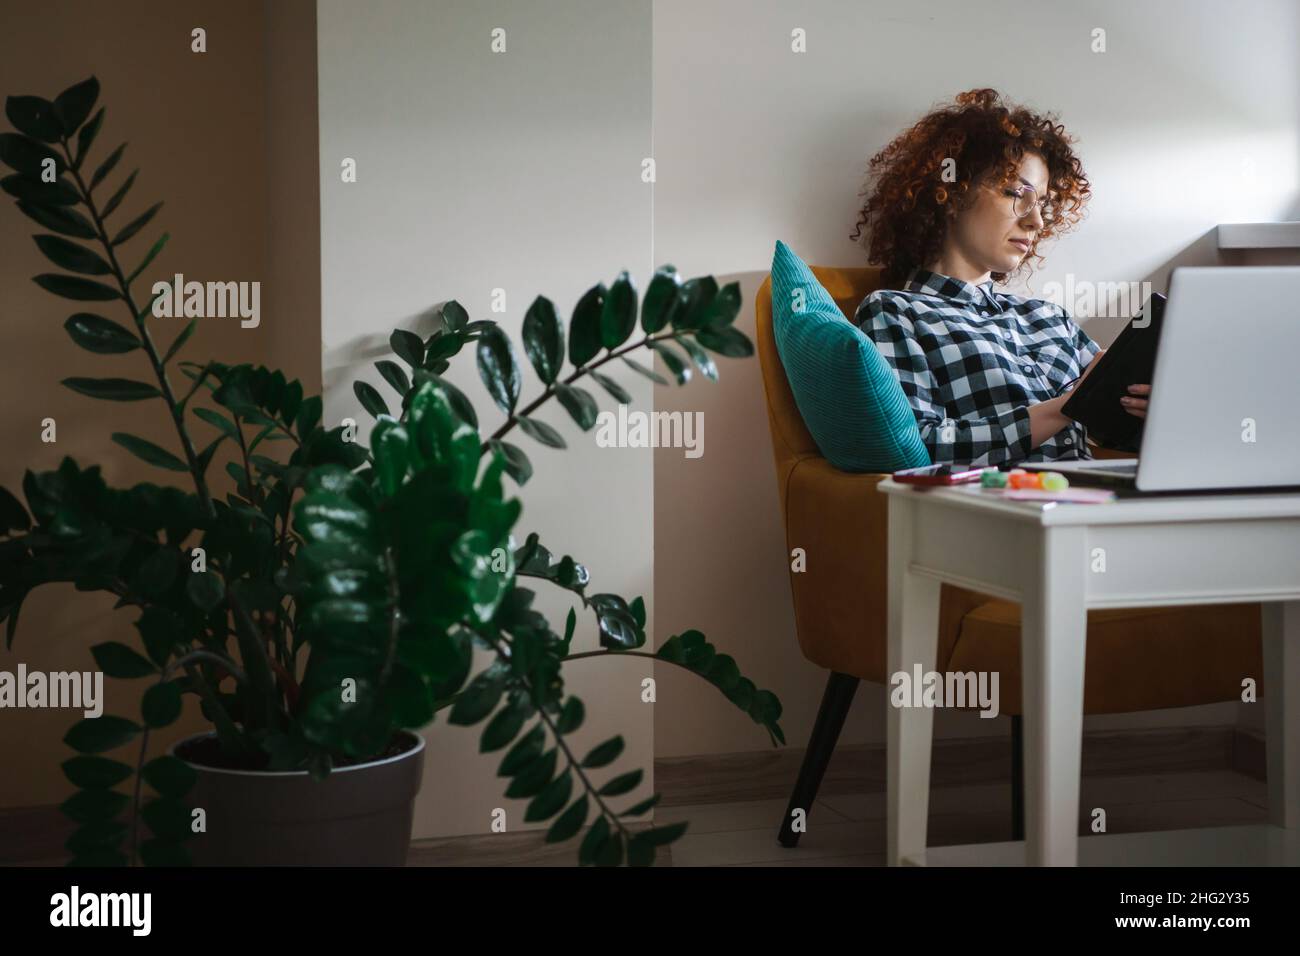 Geballte Frau mit lockigen Haaren, die ihren Laptop benutzt, während sie tagsüber im Sessel sitzt und im Journaljournal notiert. Stockfoto